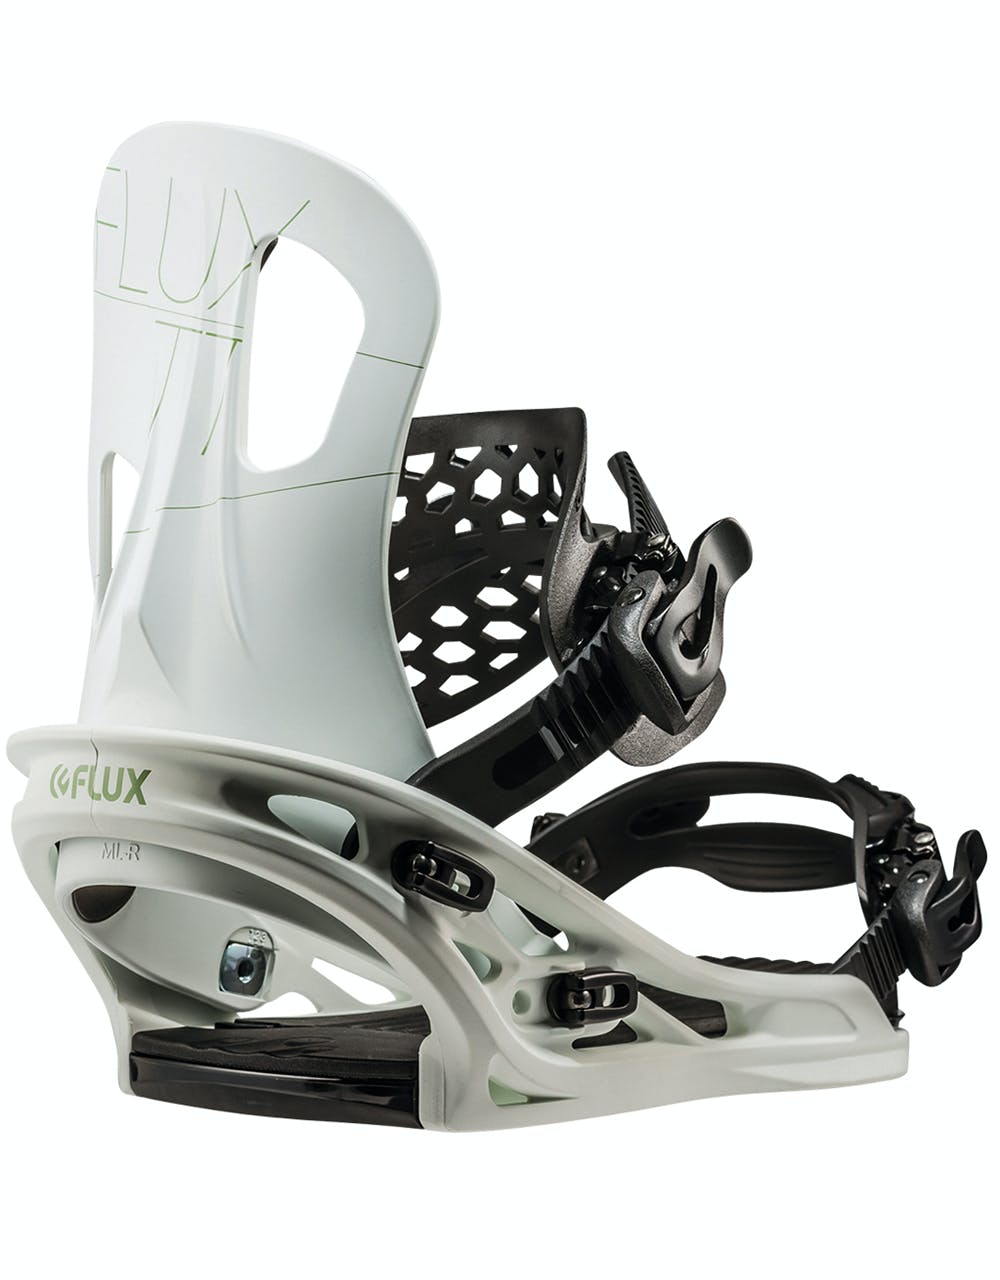 Flux TT Snowboard Bindings - White